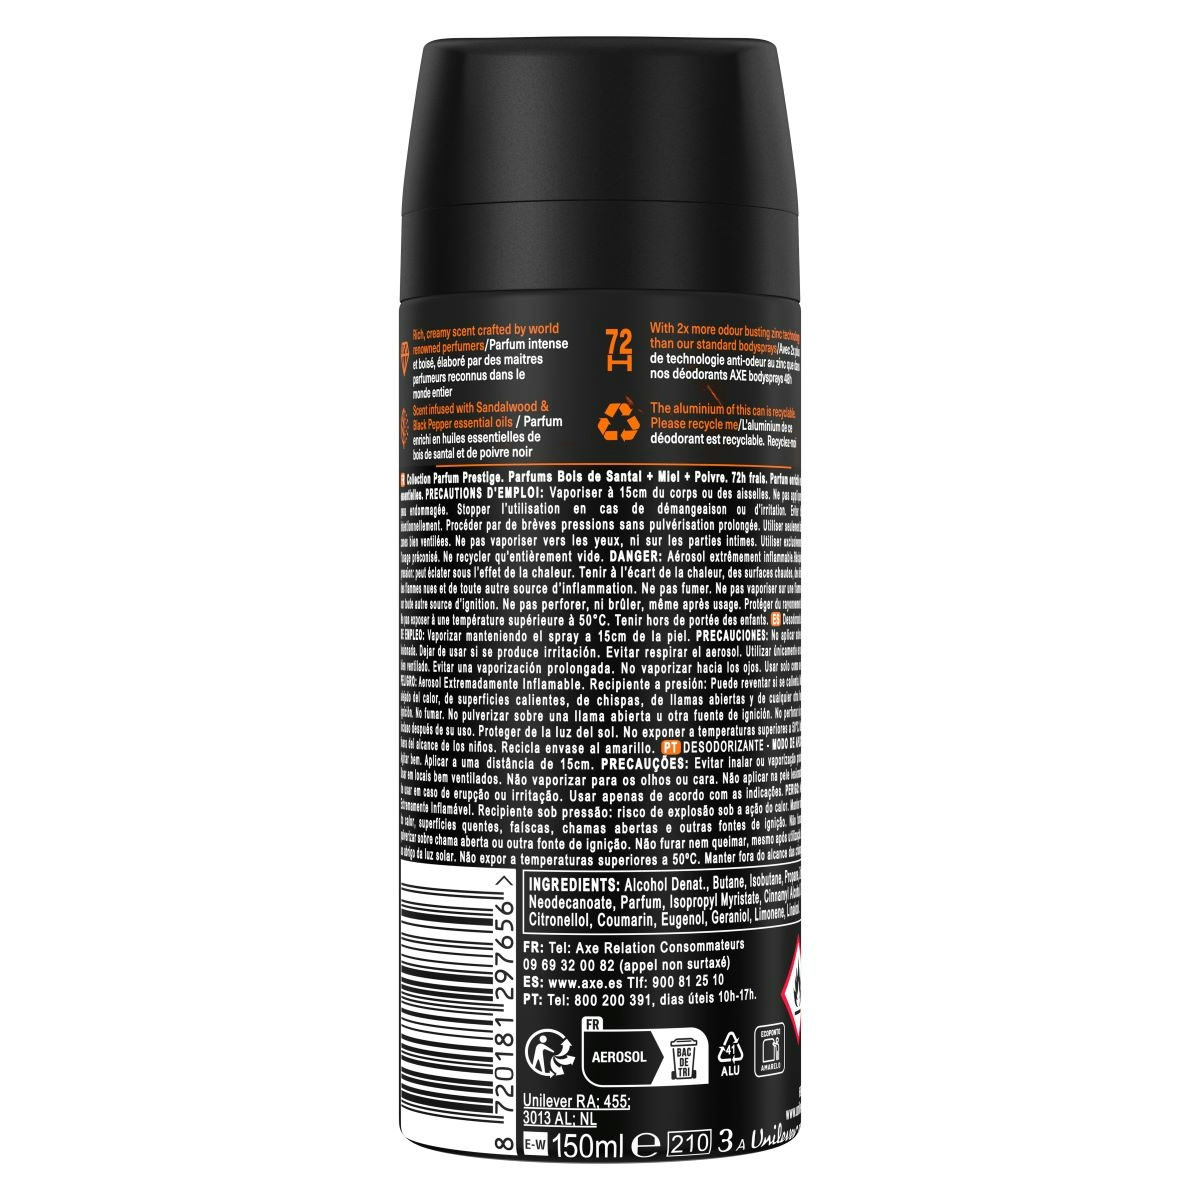 Desodorante Body Spray Copper Axe 150 Ml